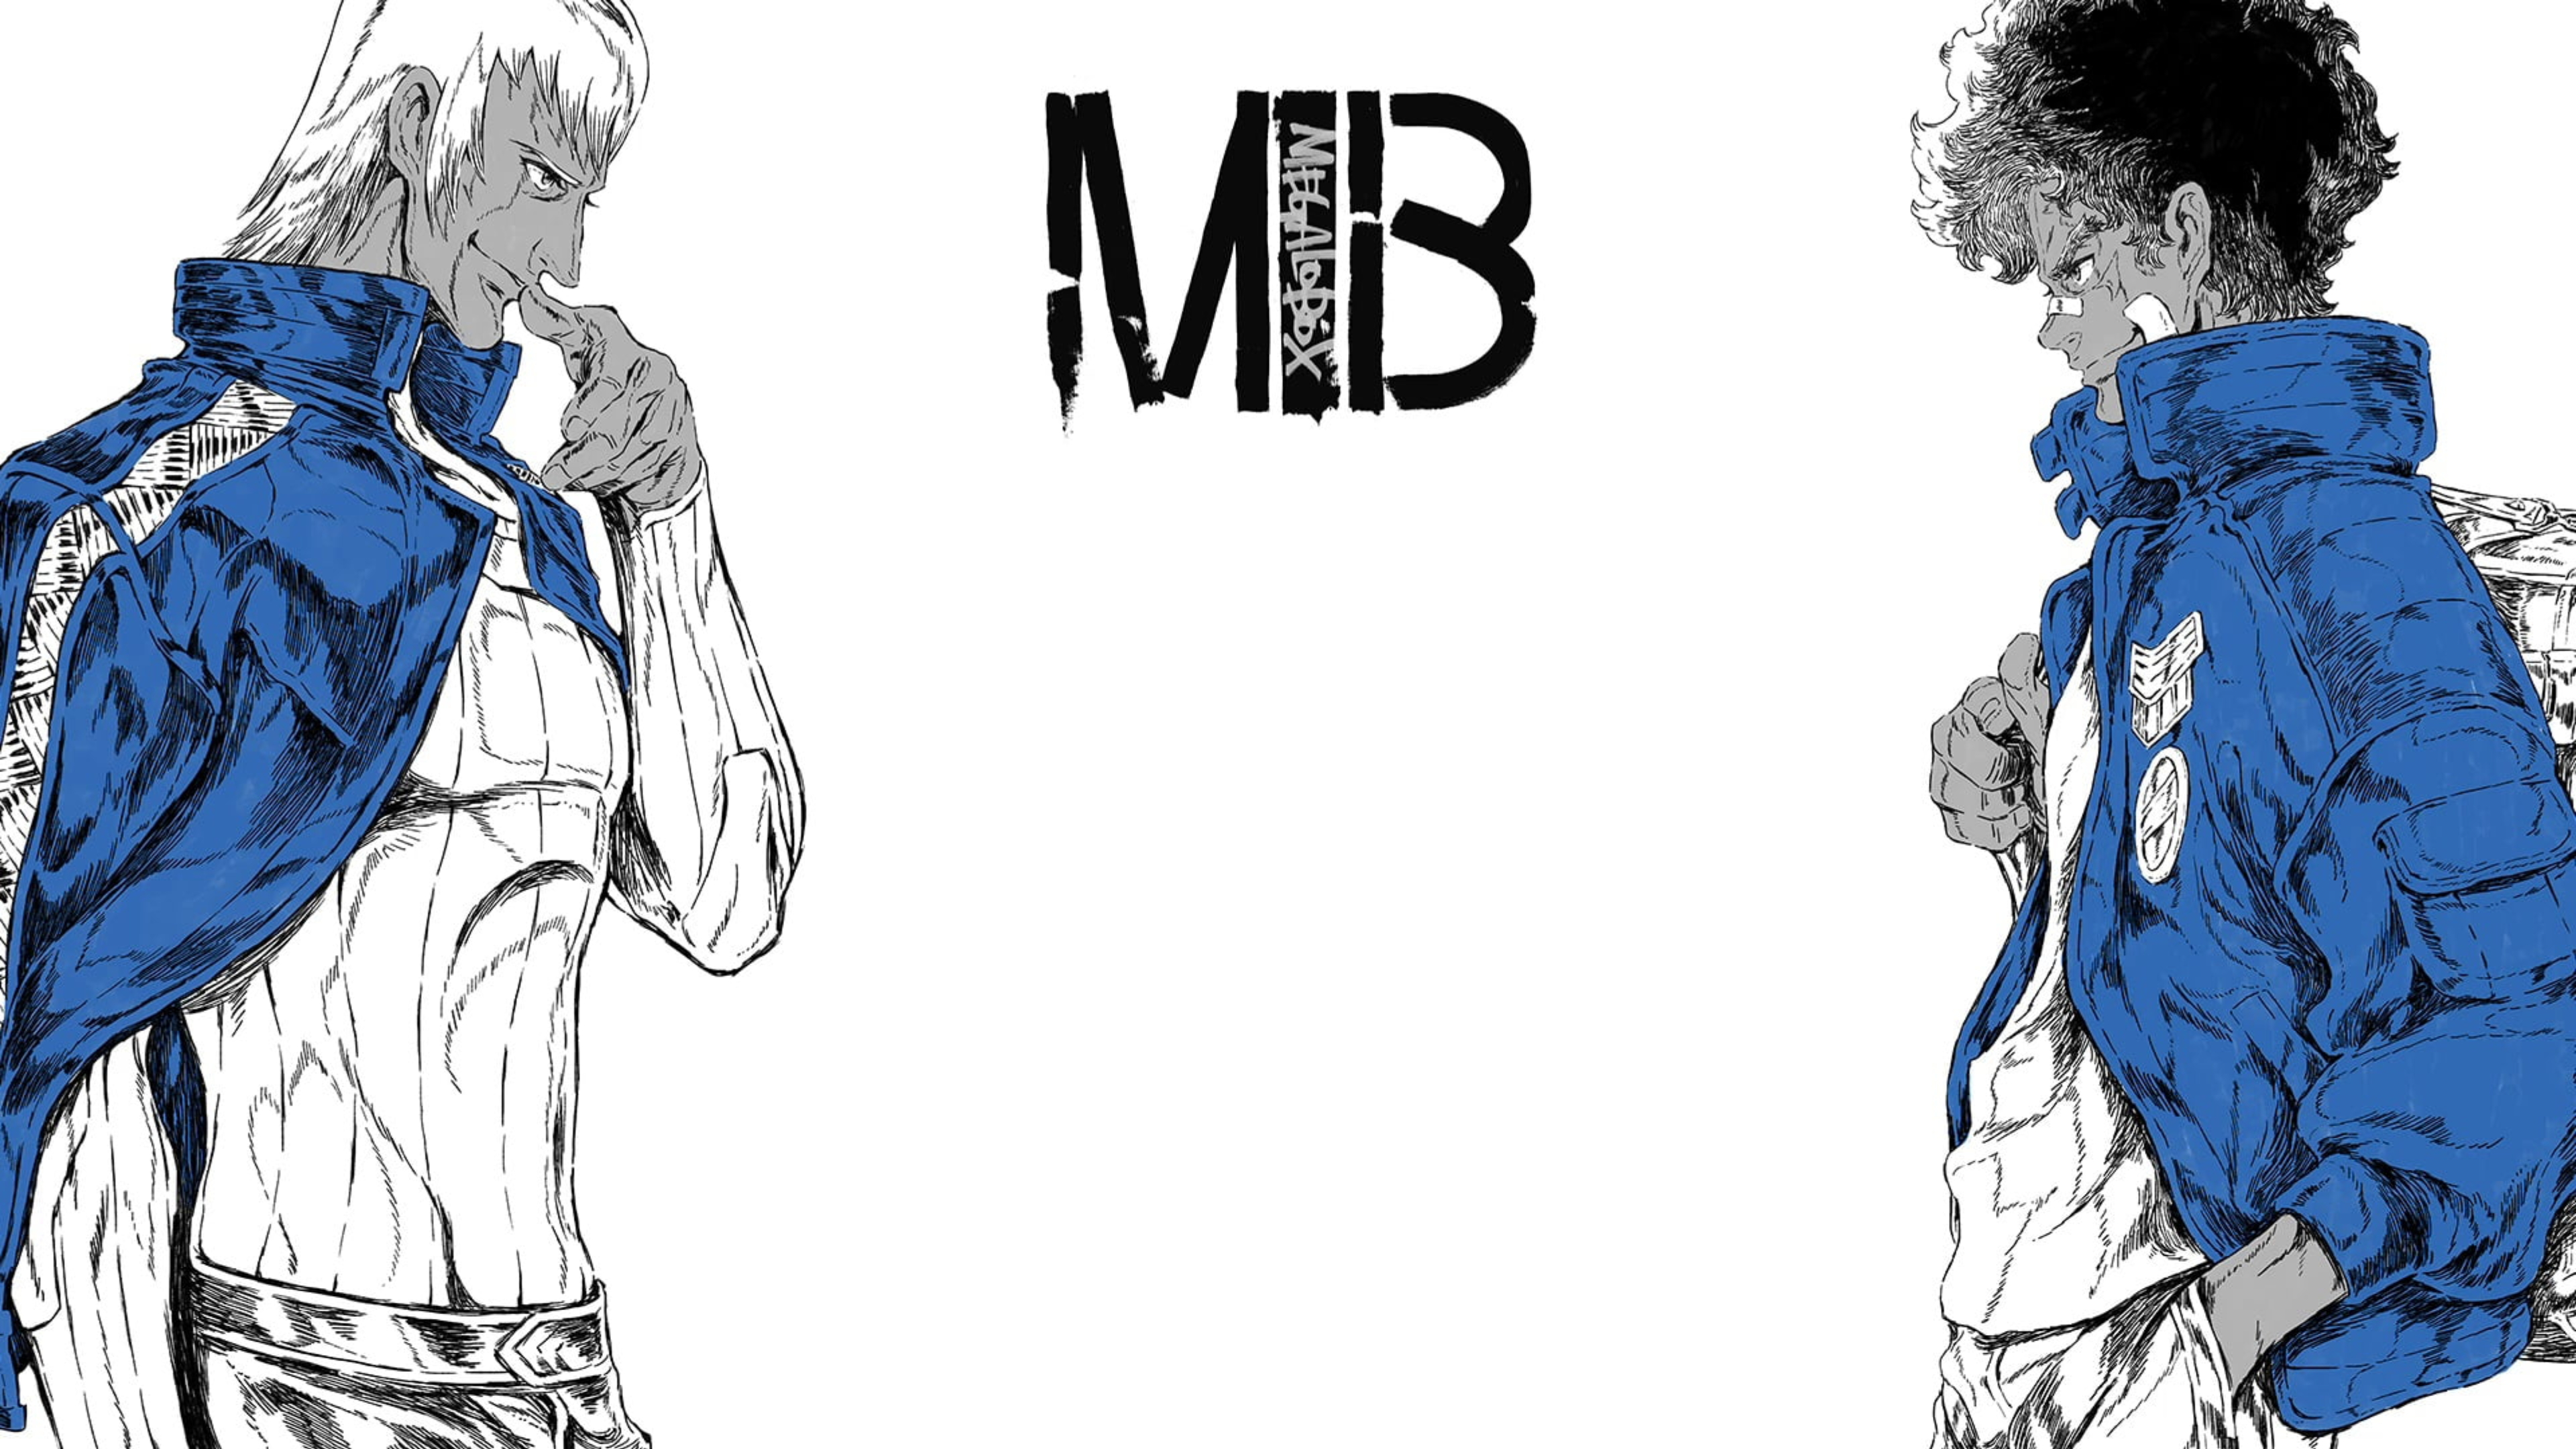 MEGALO BOX Joe MEGALO BOX Yuuri Megalo Box Anime Anime Boys Two Men Boxing Gloves Gloves Brunette Wh 3841x2160